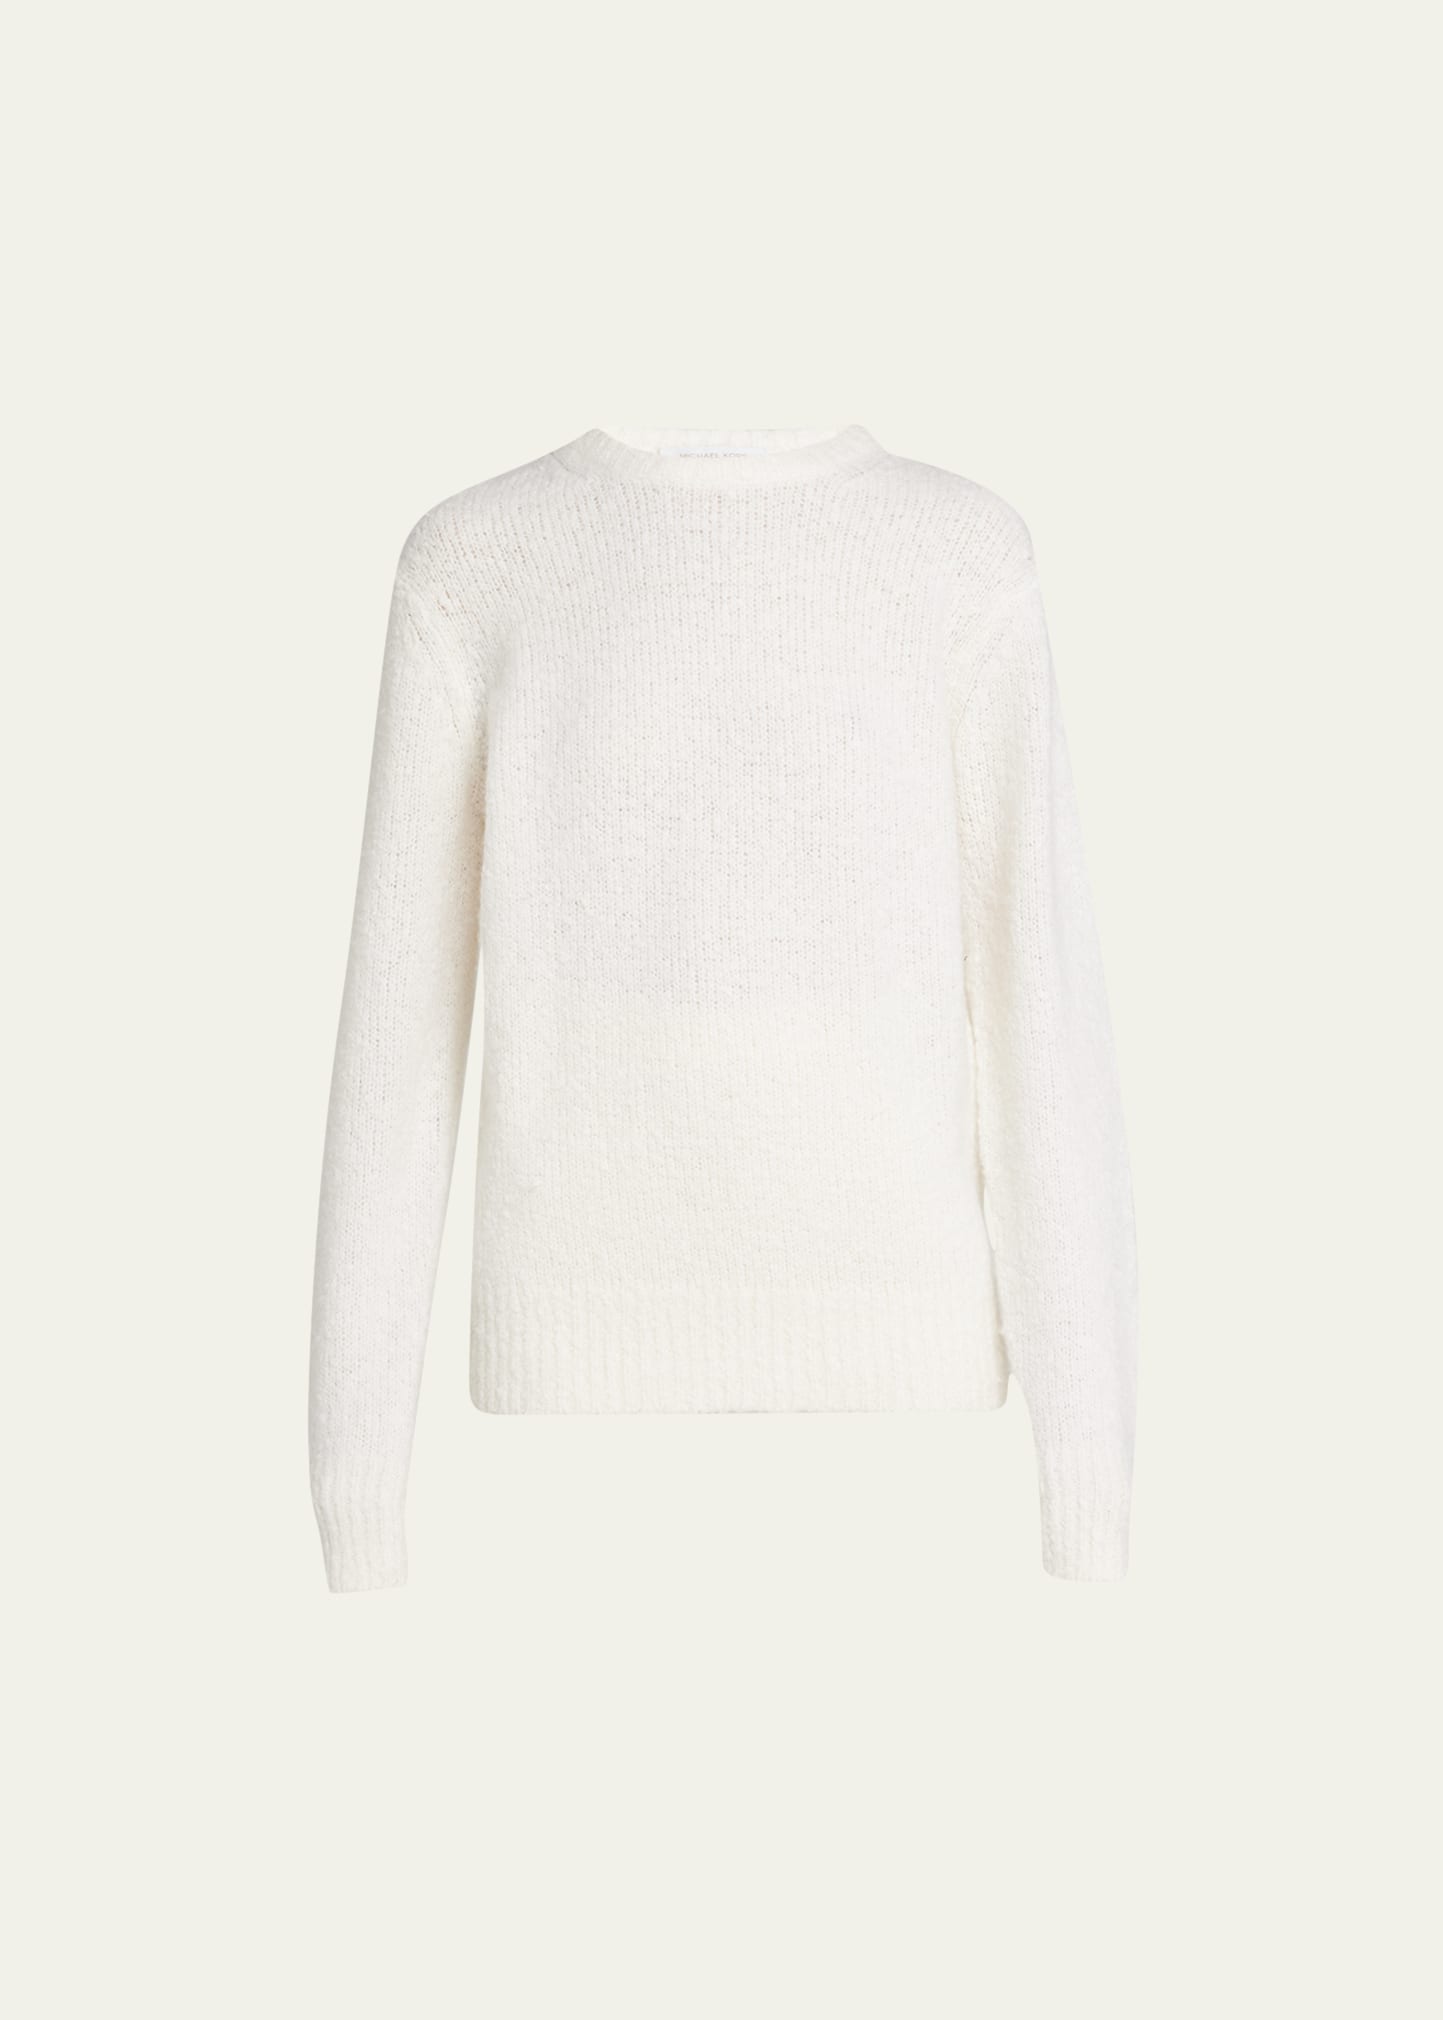 Michael Kors Collection Bouclé Cashmere Sweater